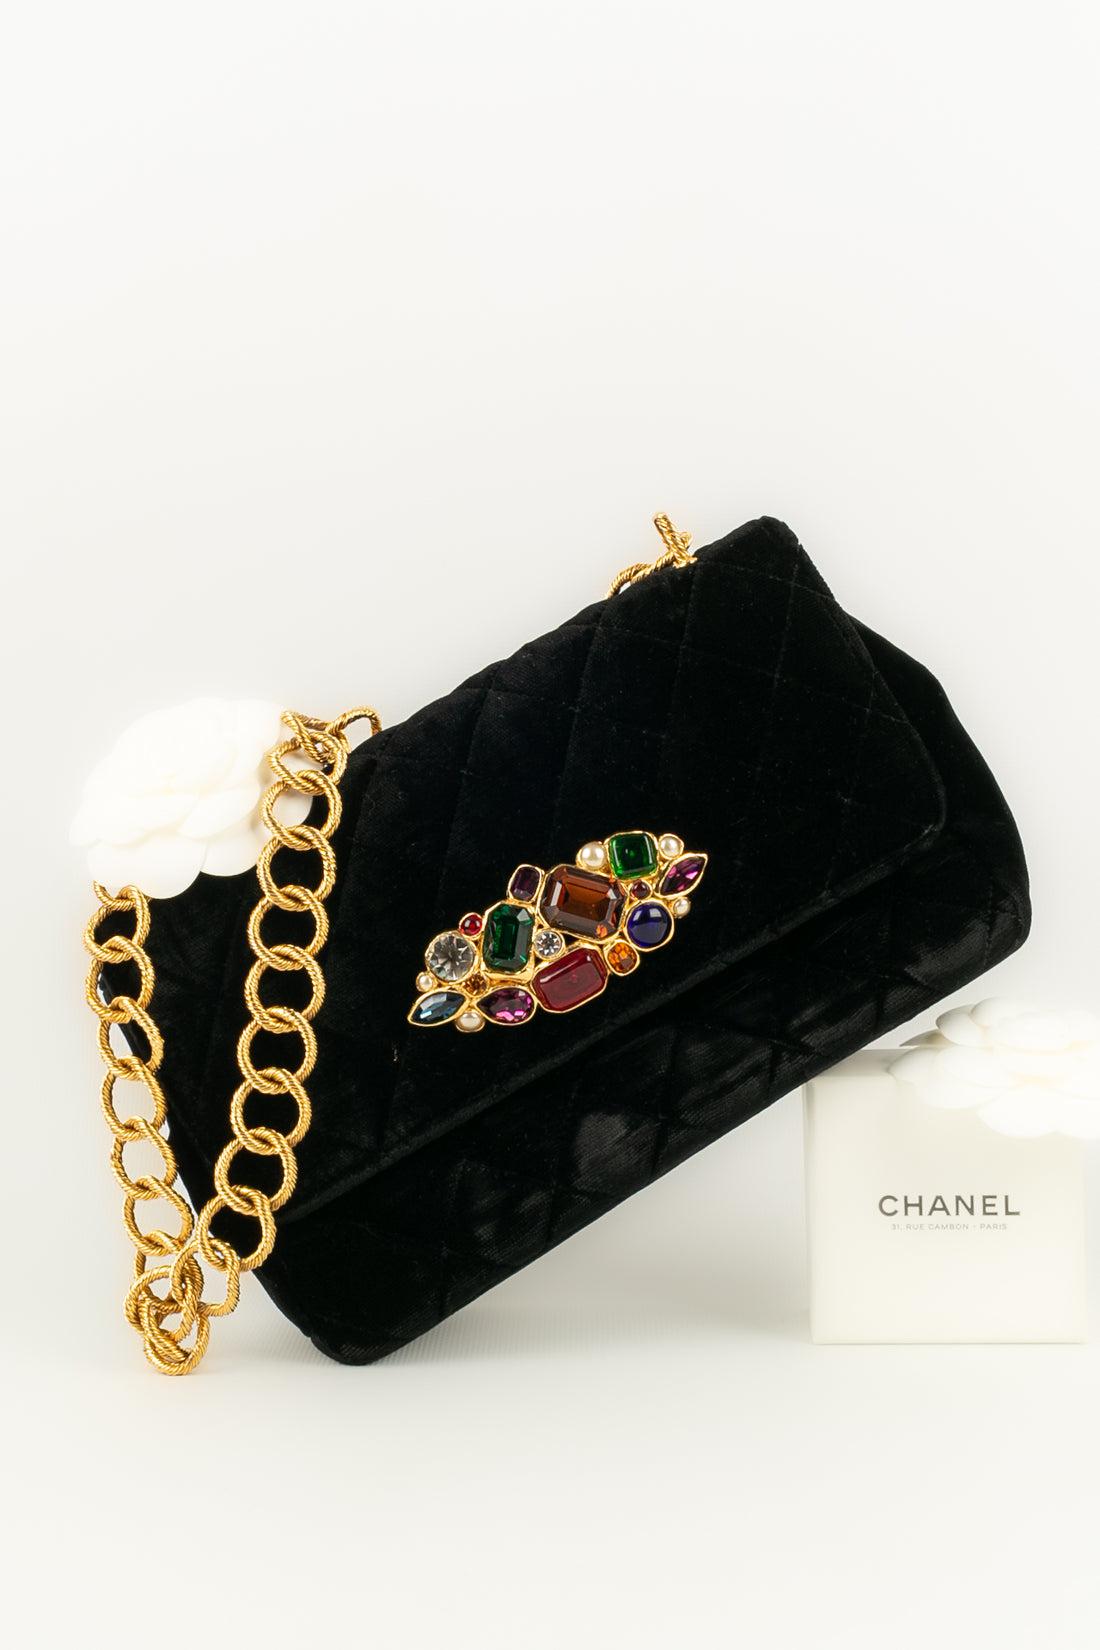 Chanel Jewel Bag in Black Velvet, 1989 / 1991 For Sale 11